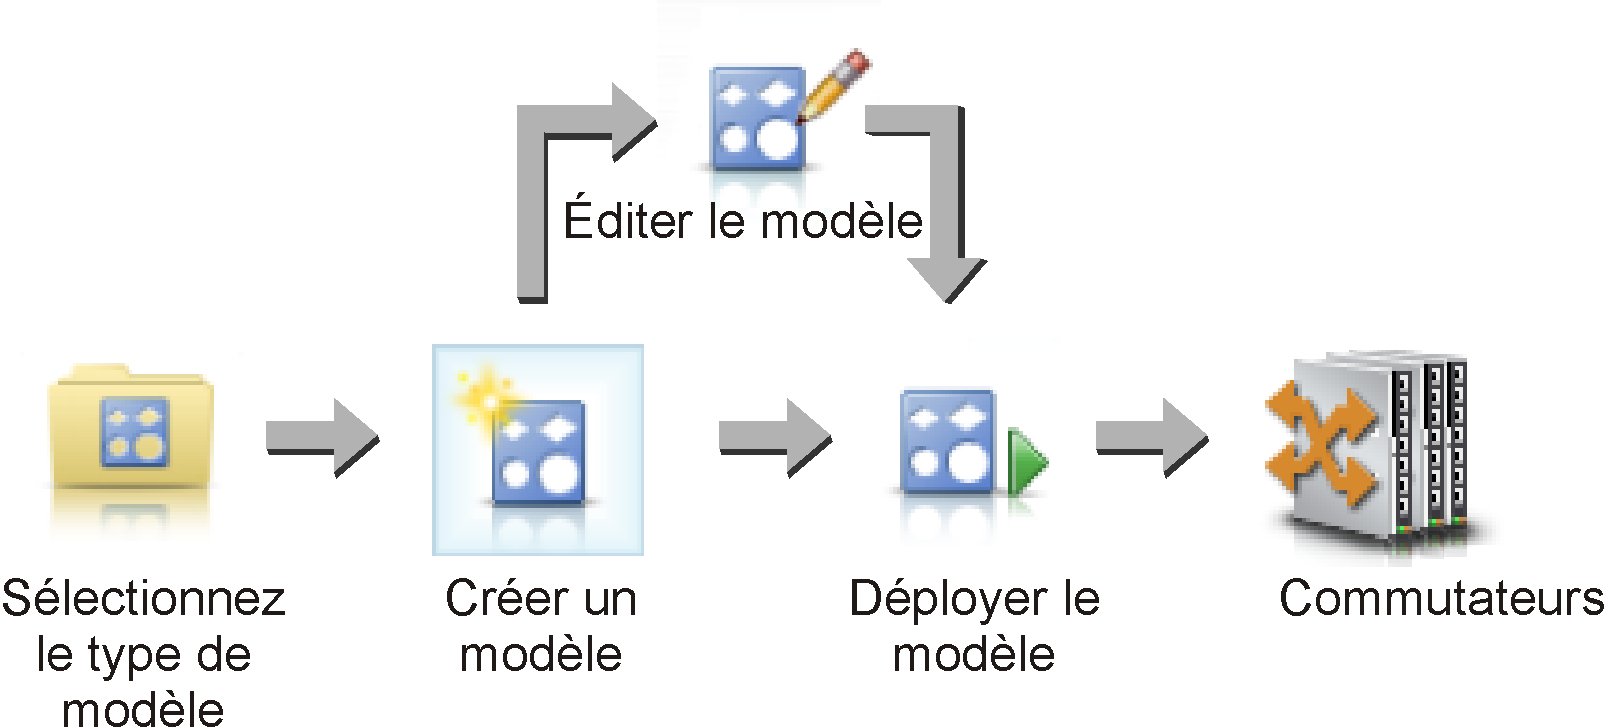 Illustre les étapes impliquées dans la création et le déploiement des modèles de configuration du commutateur.